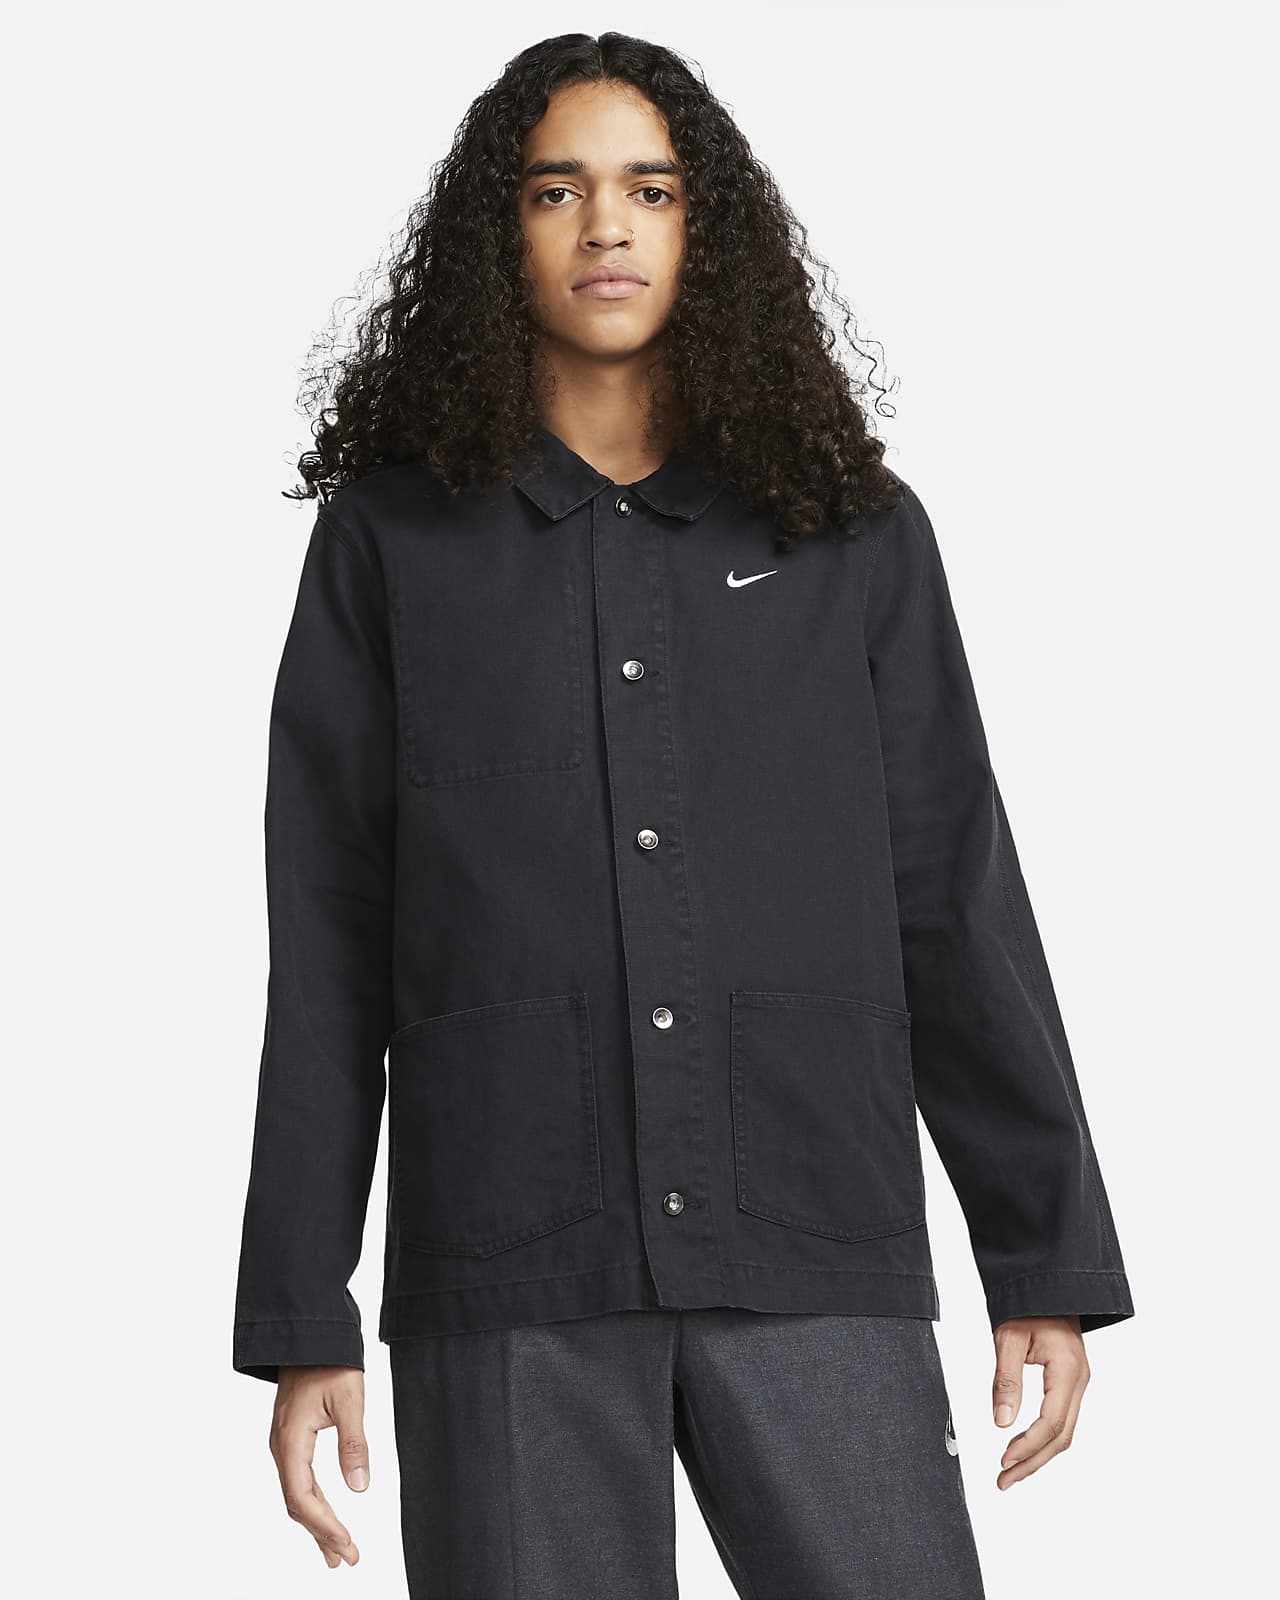 Nike Sportswear Men's Unlined Chore Coat